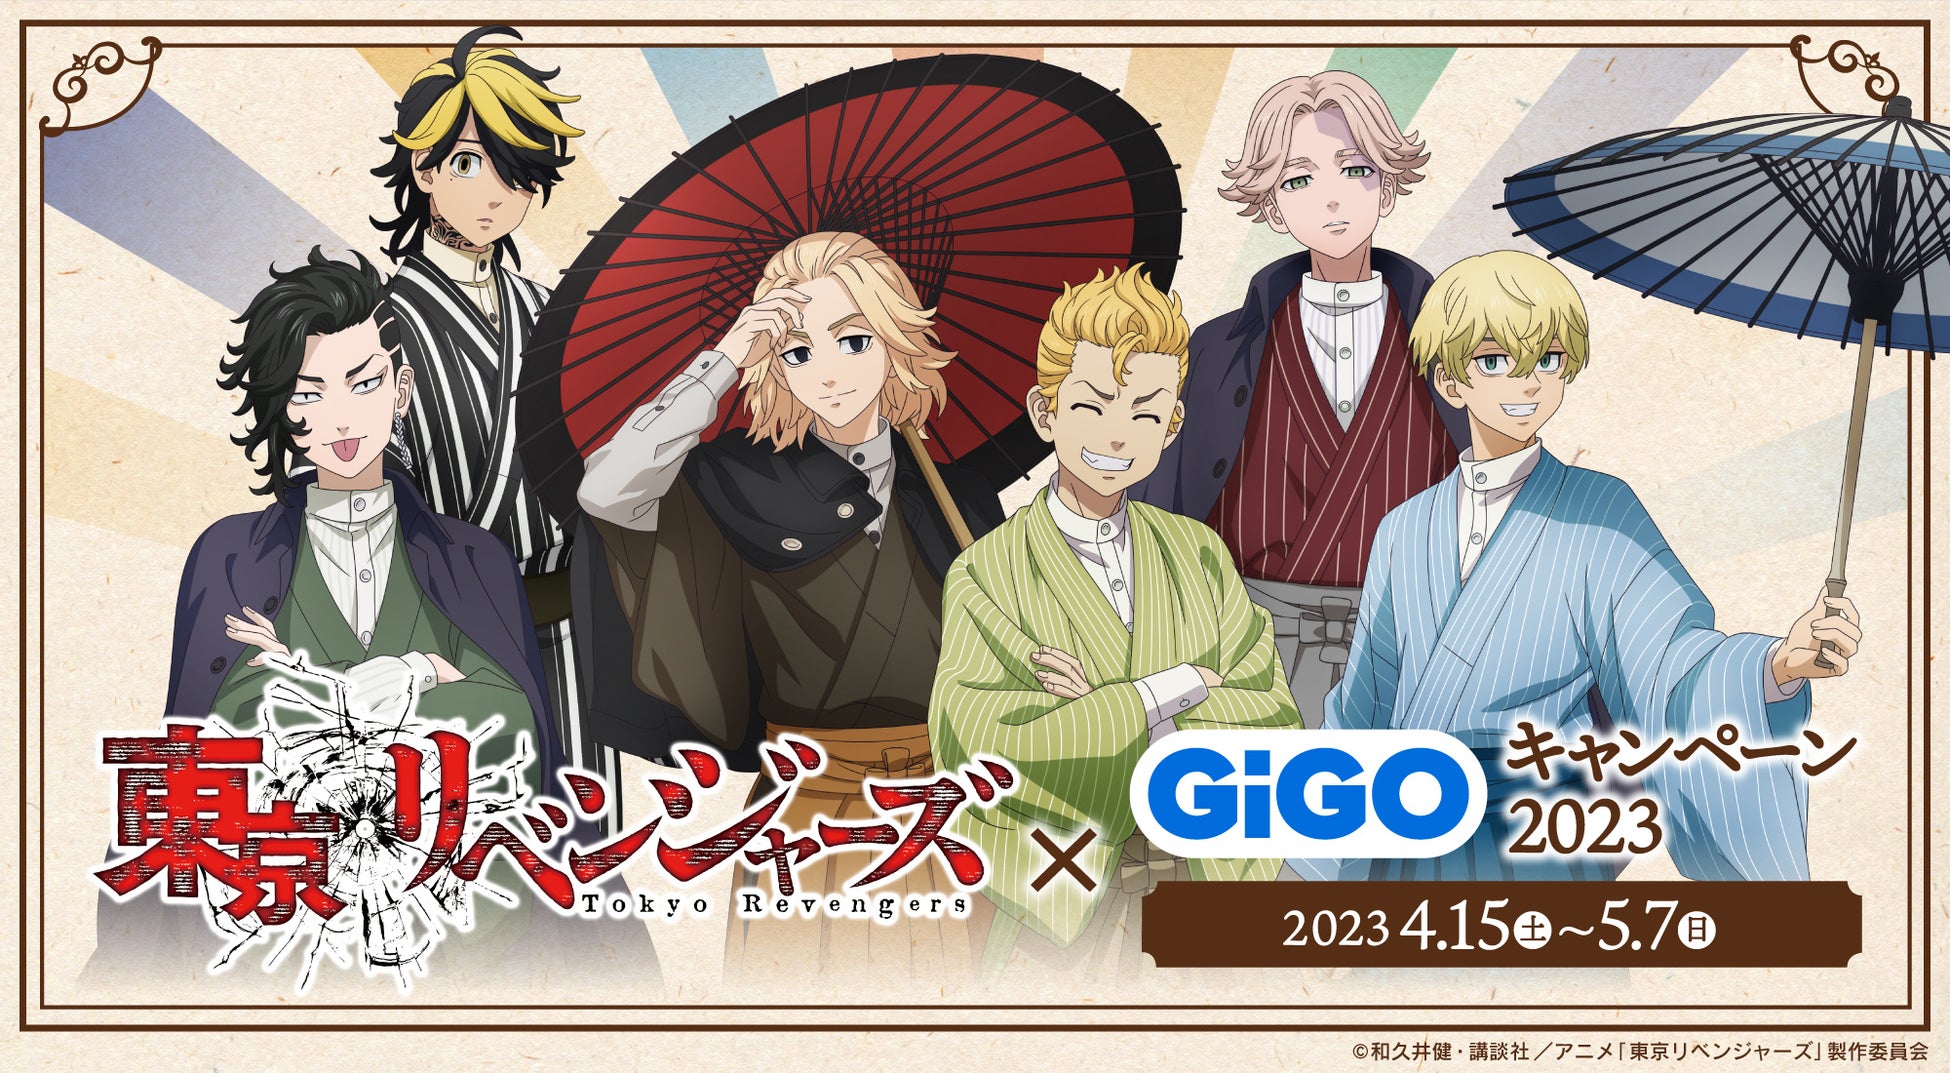 「東京リベンジャーズ×GiGOキャンペーン2023」開催のお知らせ